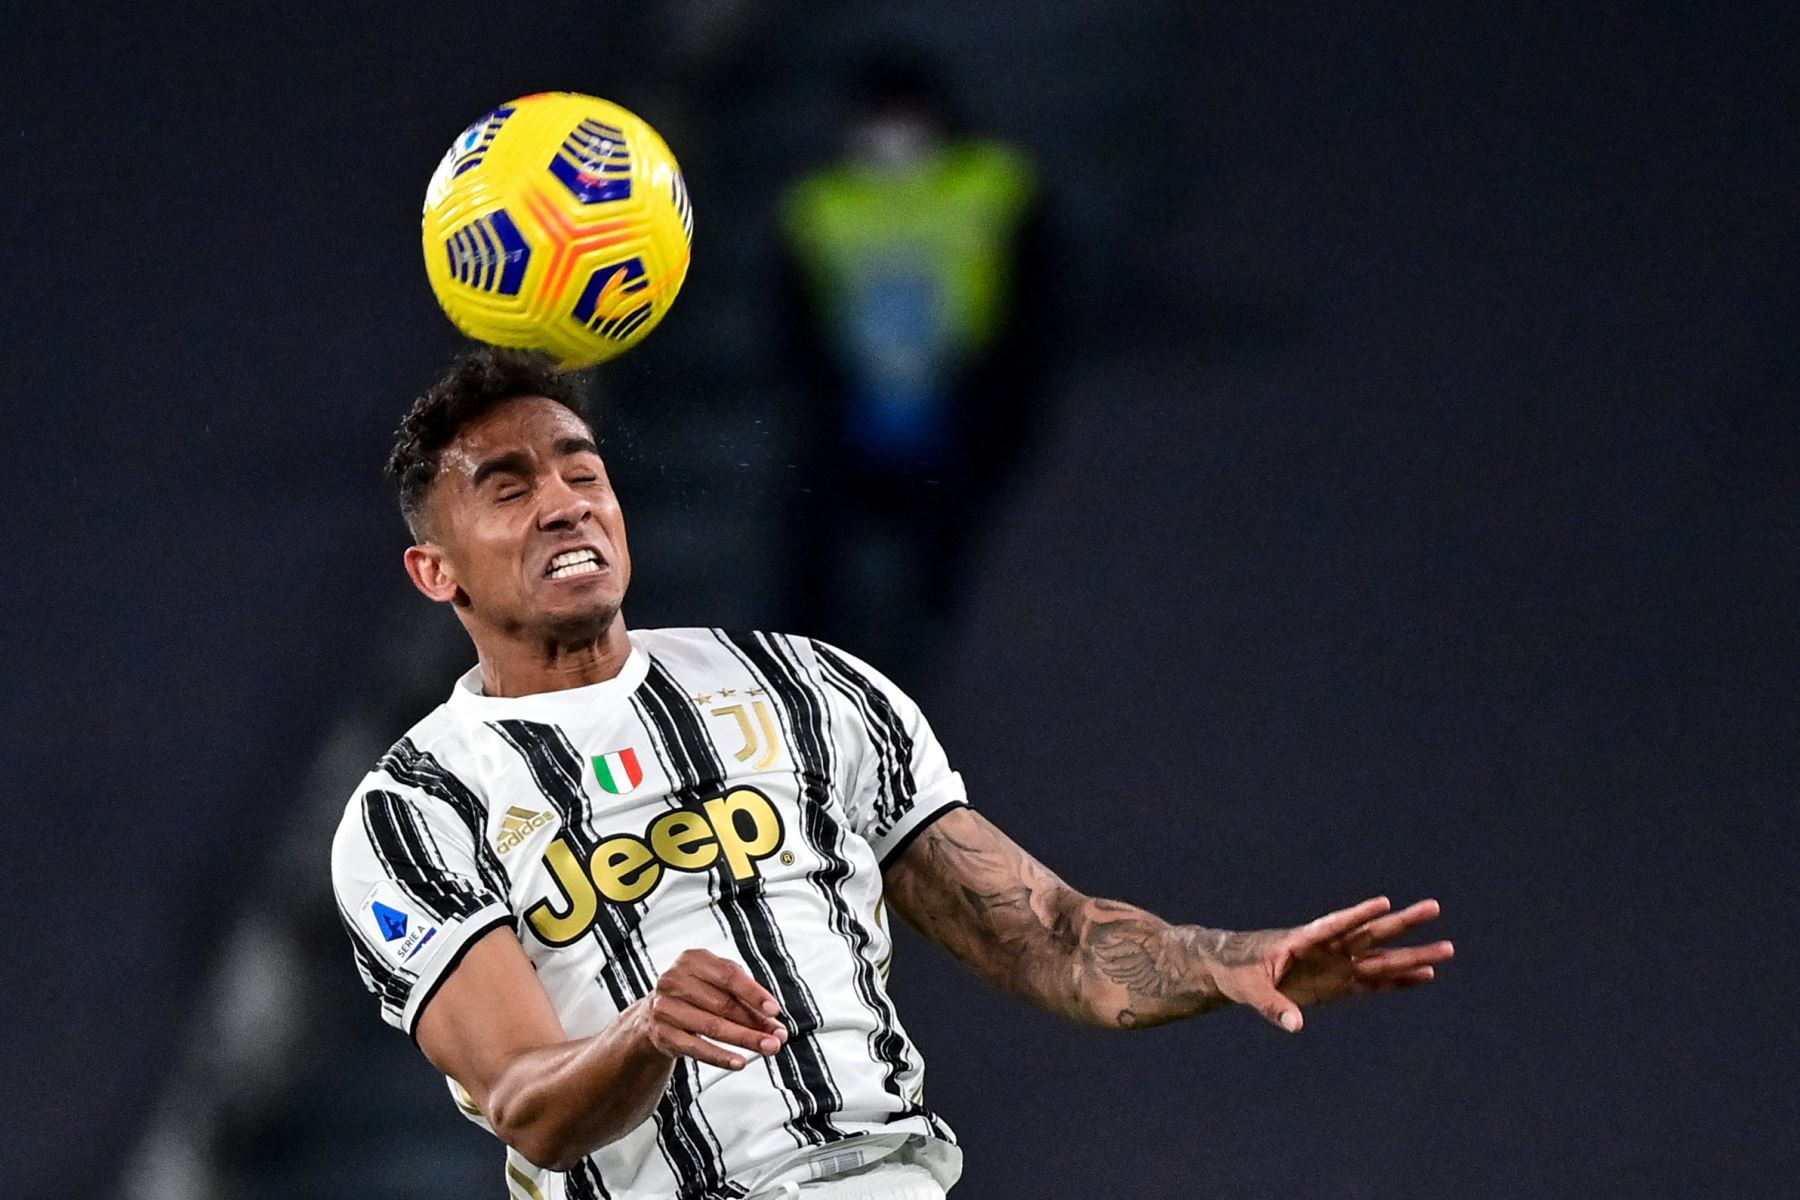 El defensor brasileño de la Juventus, Danilo, cabecea el balón durante el partido de fútbol de la Serie A italiana entre la Juventus y la Lazio en el estadio de la Juventus en Turín, en el norte de Italia. Foto: AFP